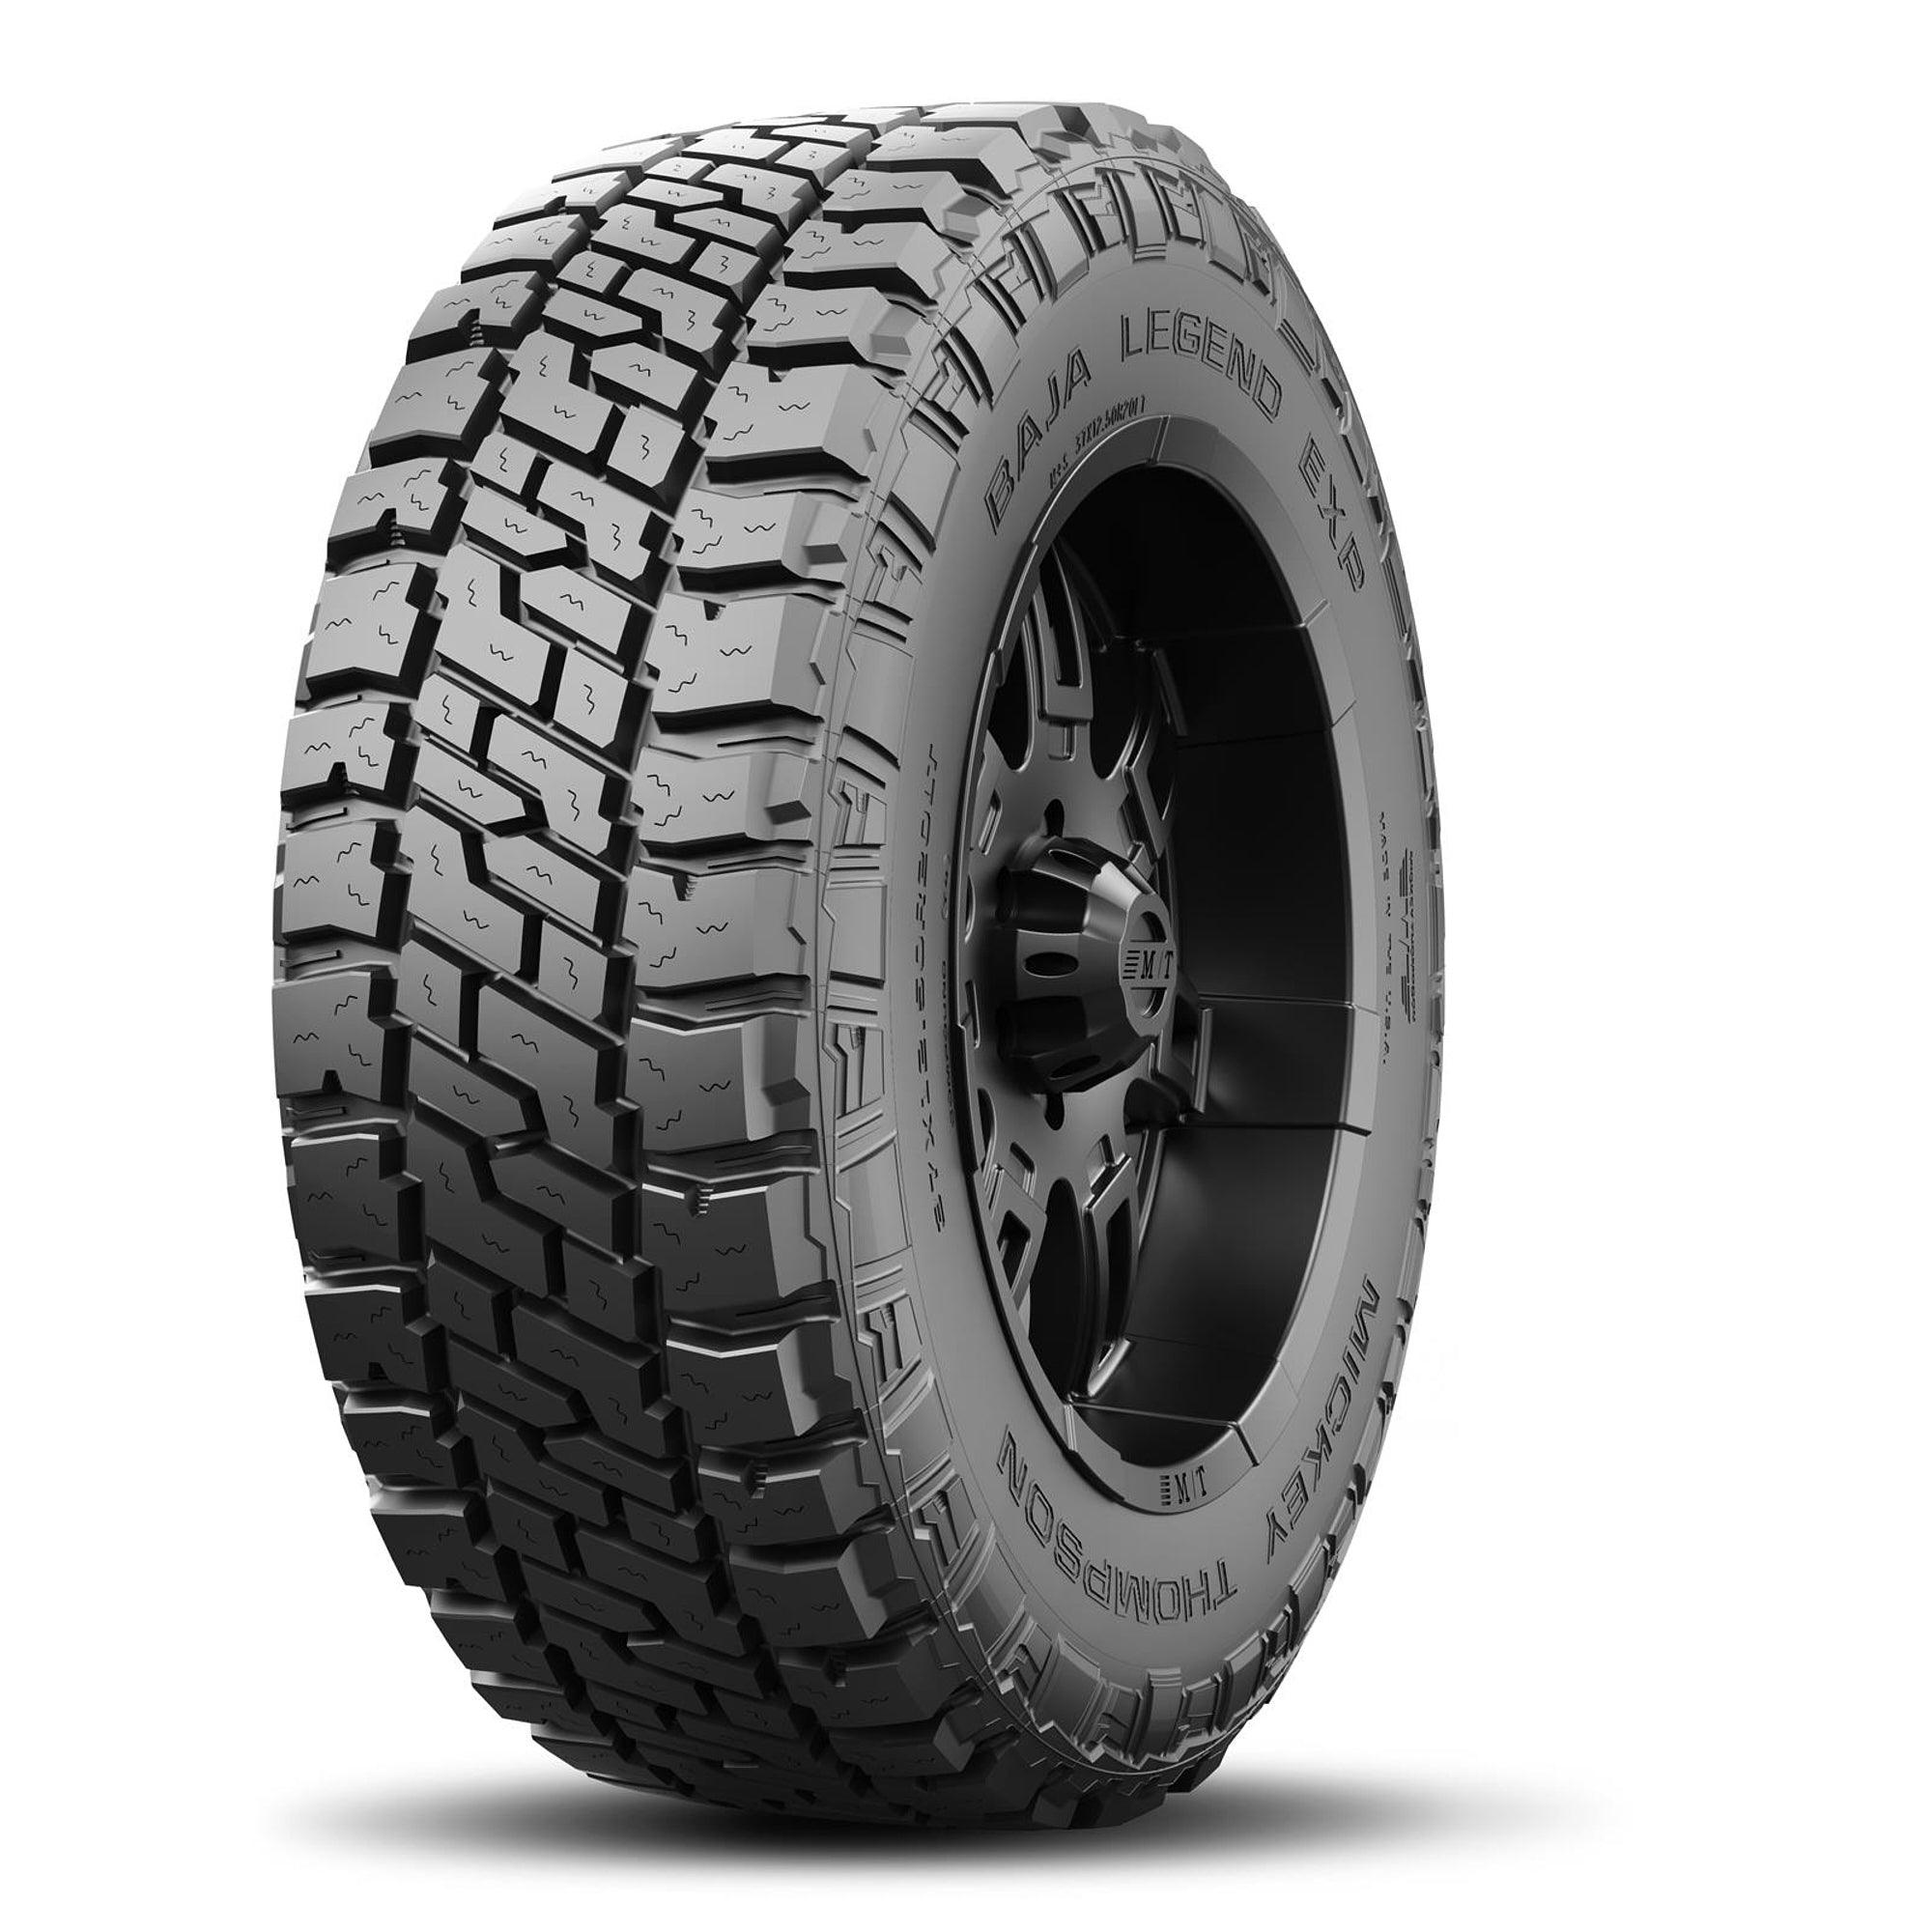 Baja Legend EXP Tire LT295/65R20 129/126Q - Burlile Performance Products